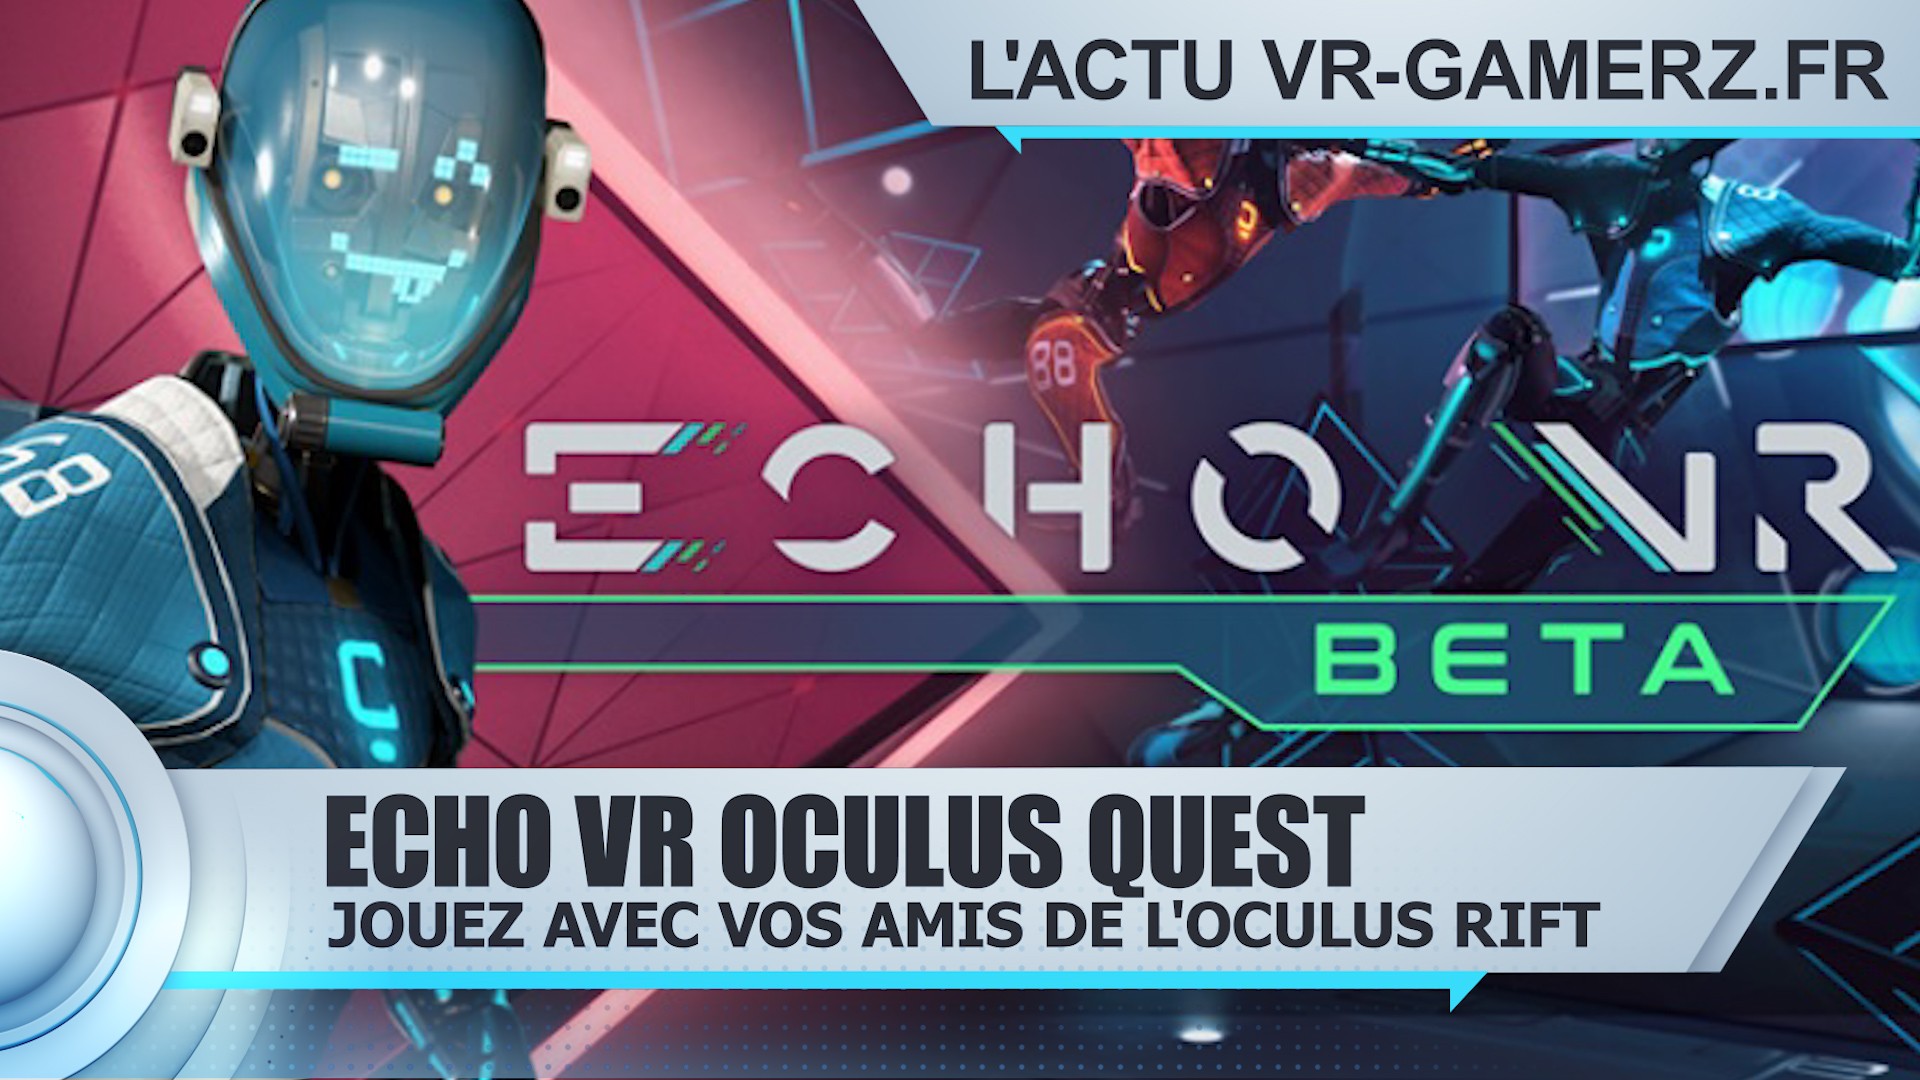 Echo VR Oculus quest jouez avec vos amis du Rift